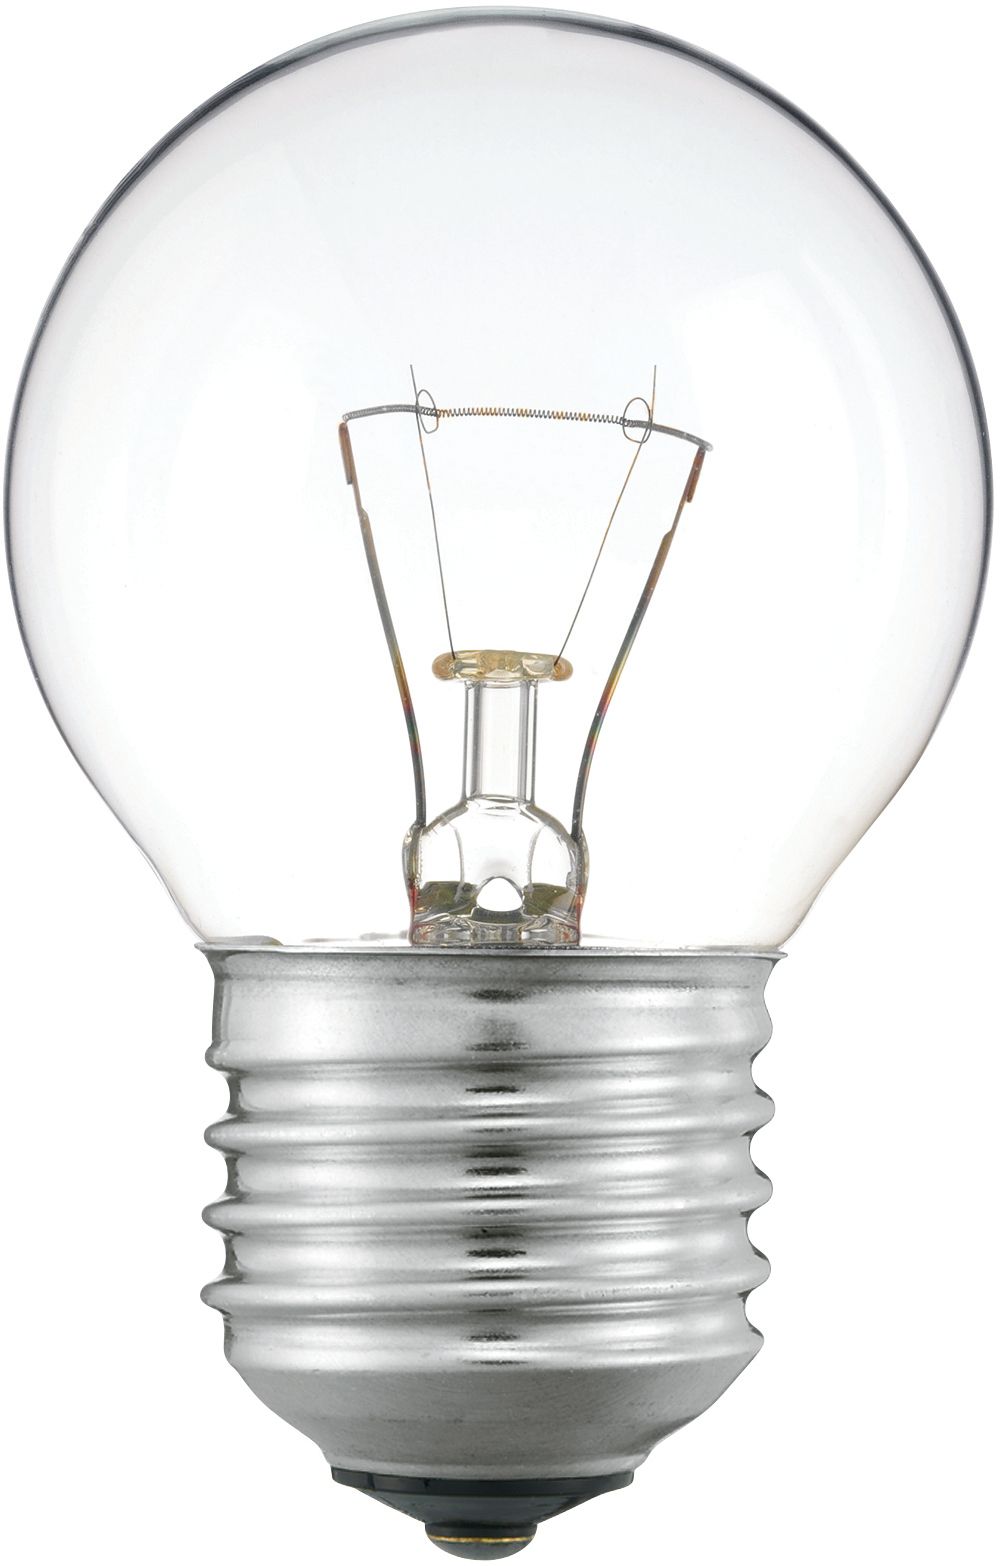 Ampoule LED E27 Standard Filement Blanc-chaud 40W x1 PHILIPS : l